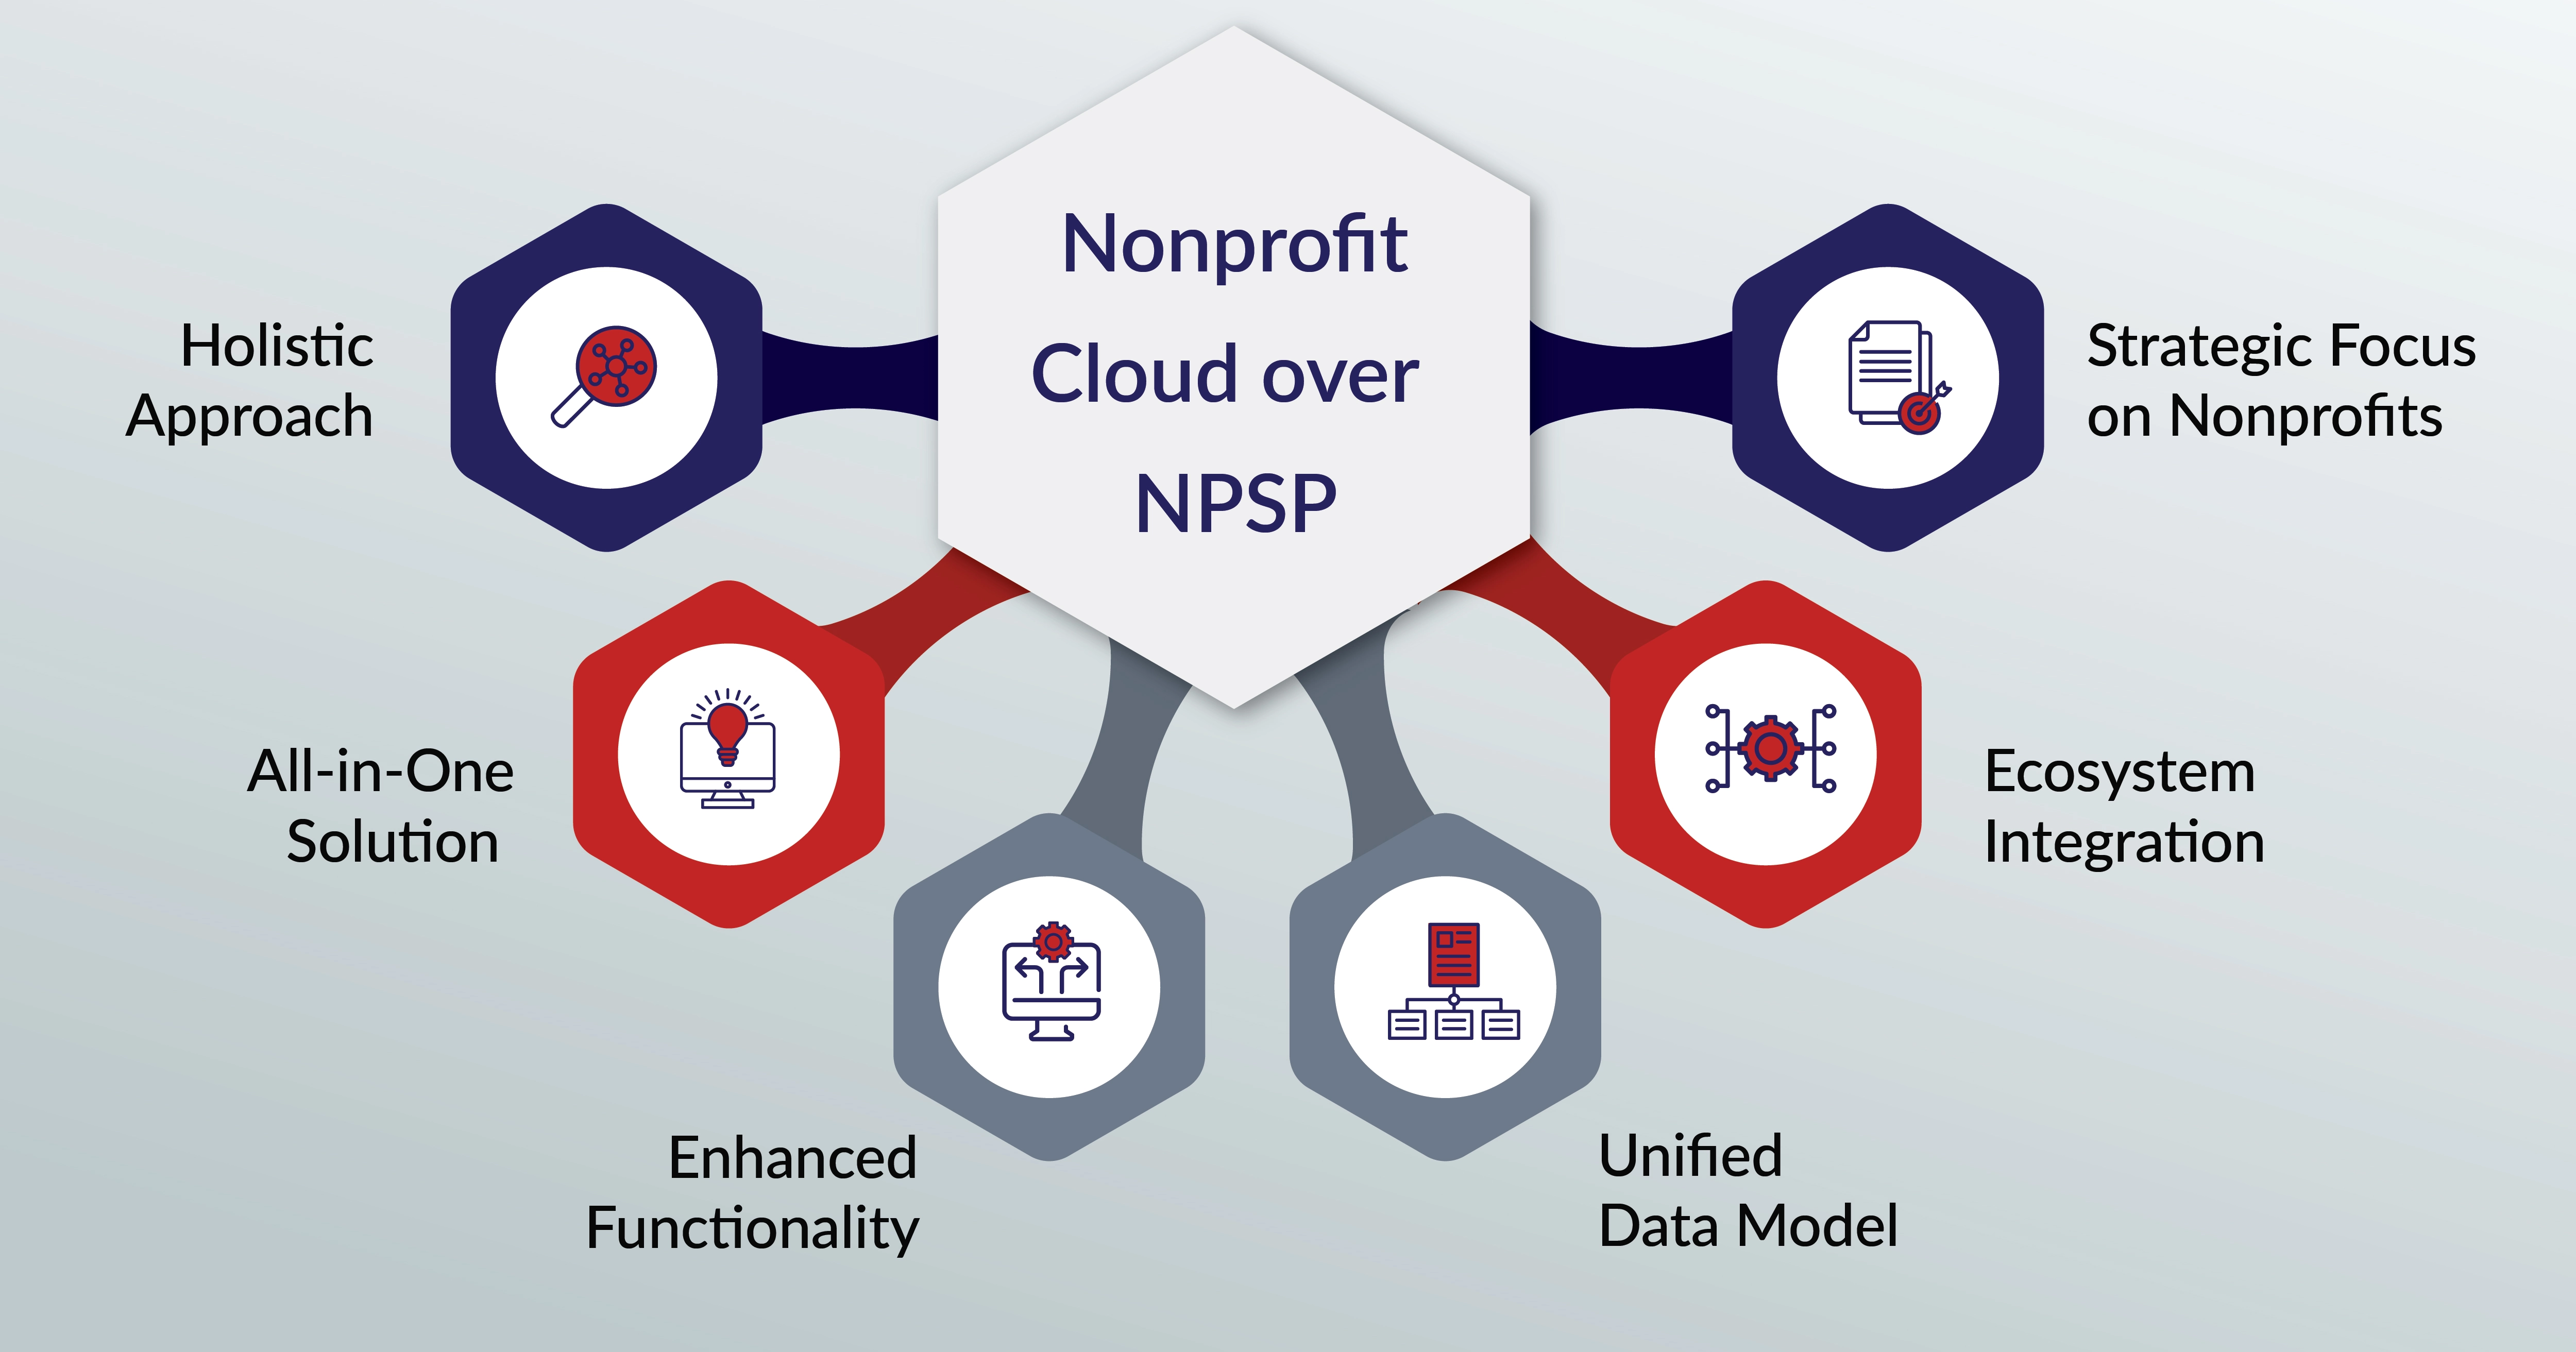 Nonprofit cloud over NPSP